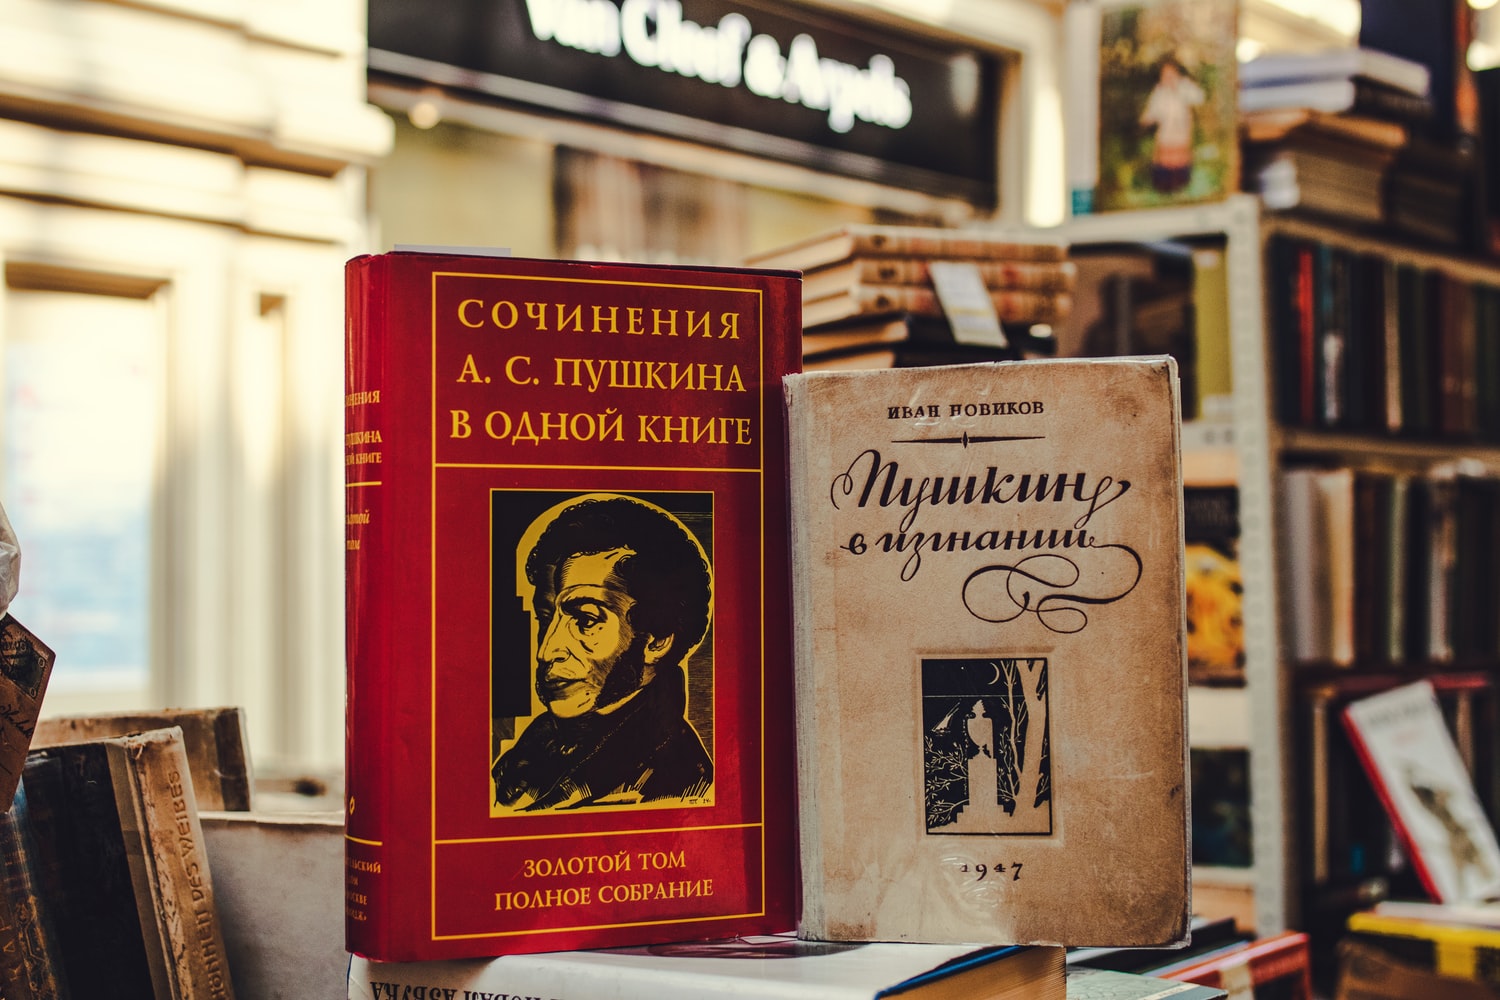 Кожен третій читач львівських бібліотек бере книги російською мовою.